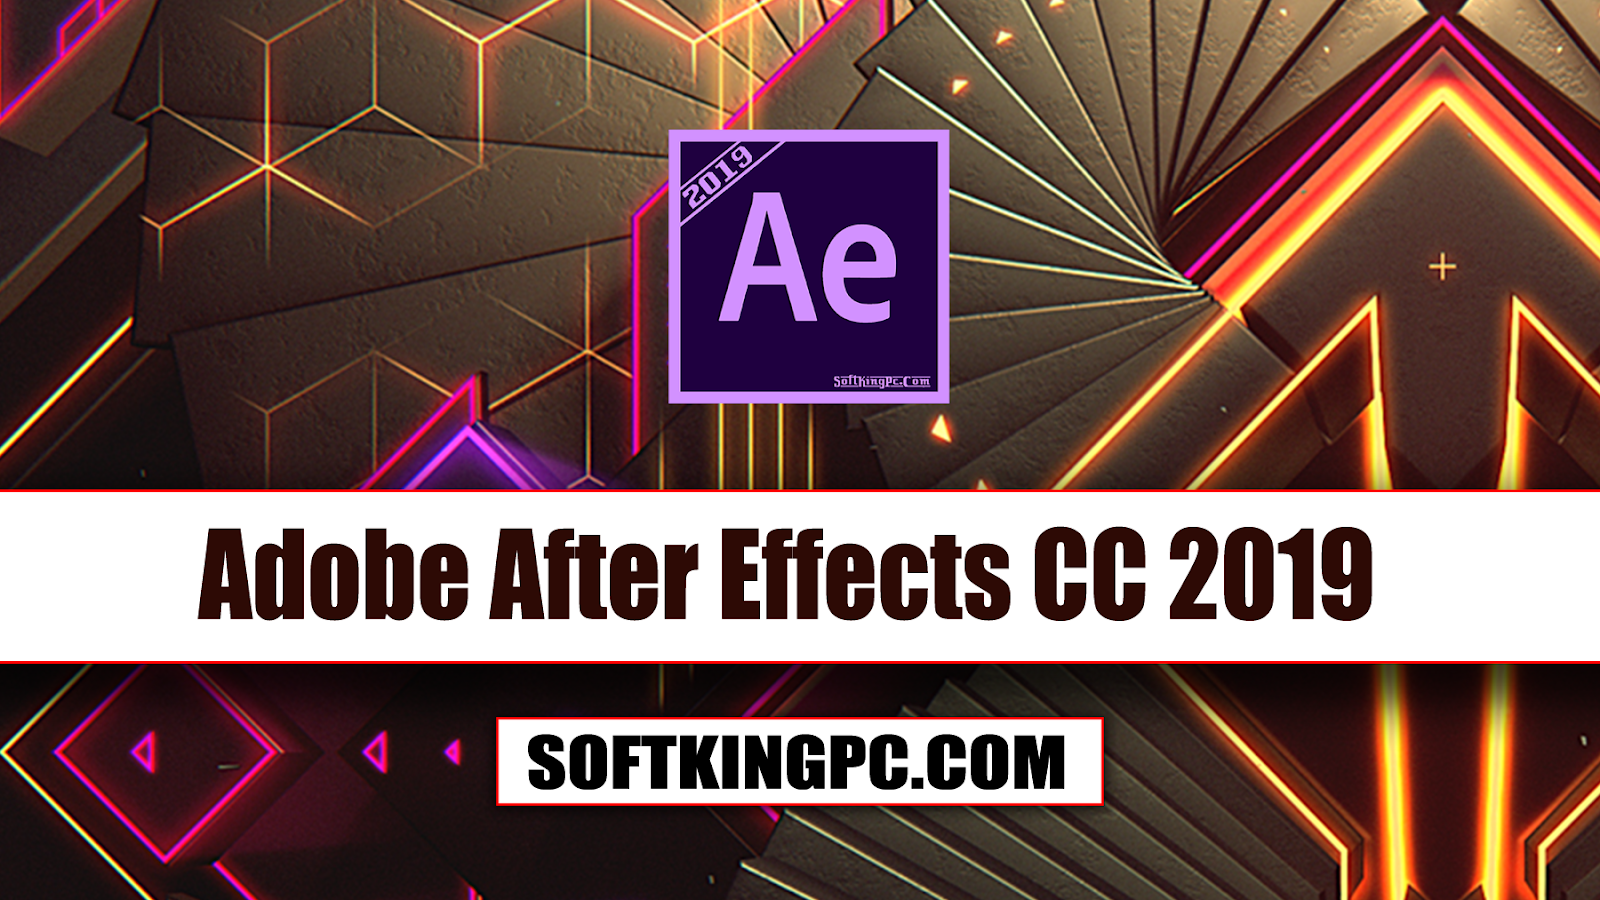 Adobe effects 2019. After Effects 2019. Adobe after Effects cc 2019. Adobe after Effects 2019.